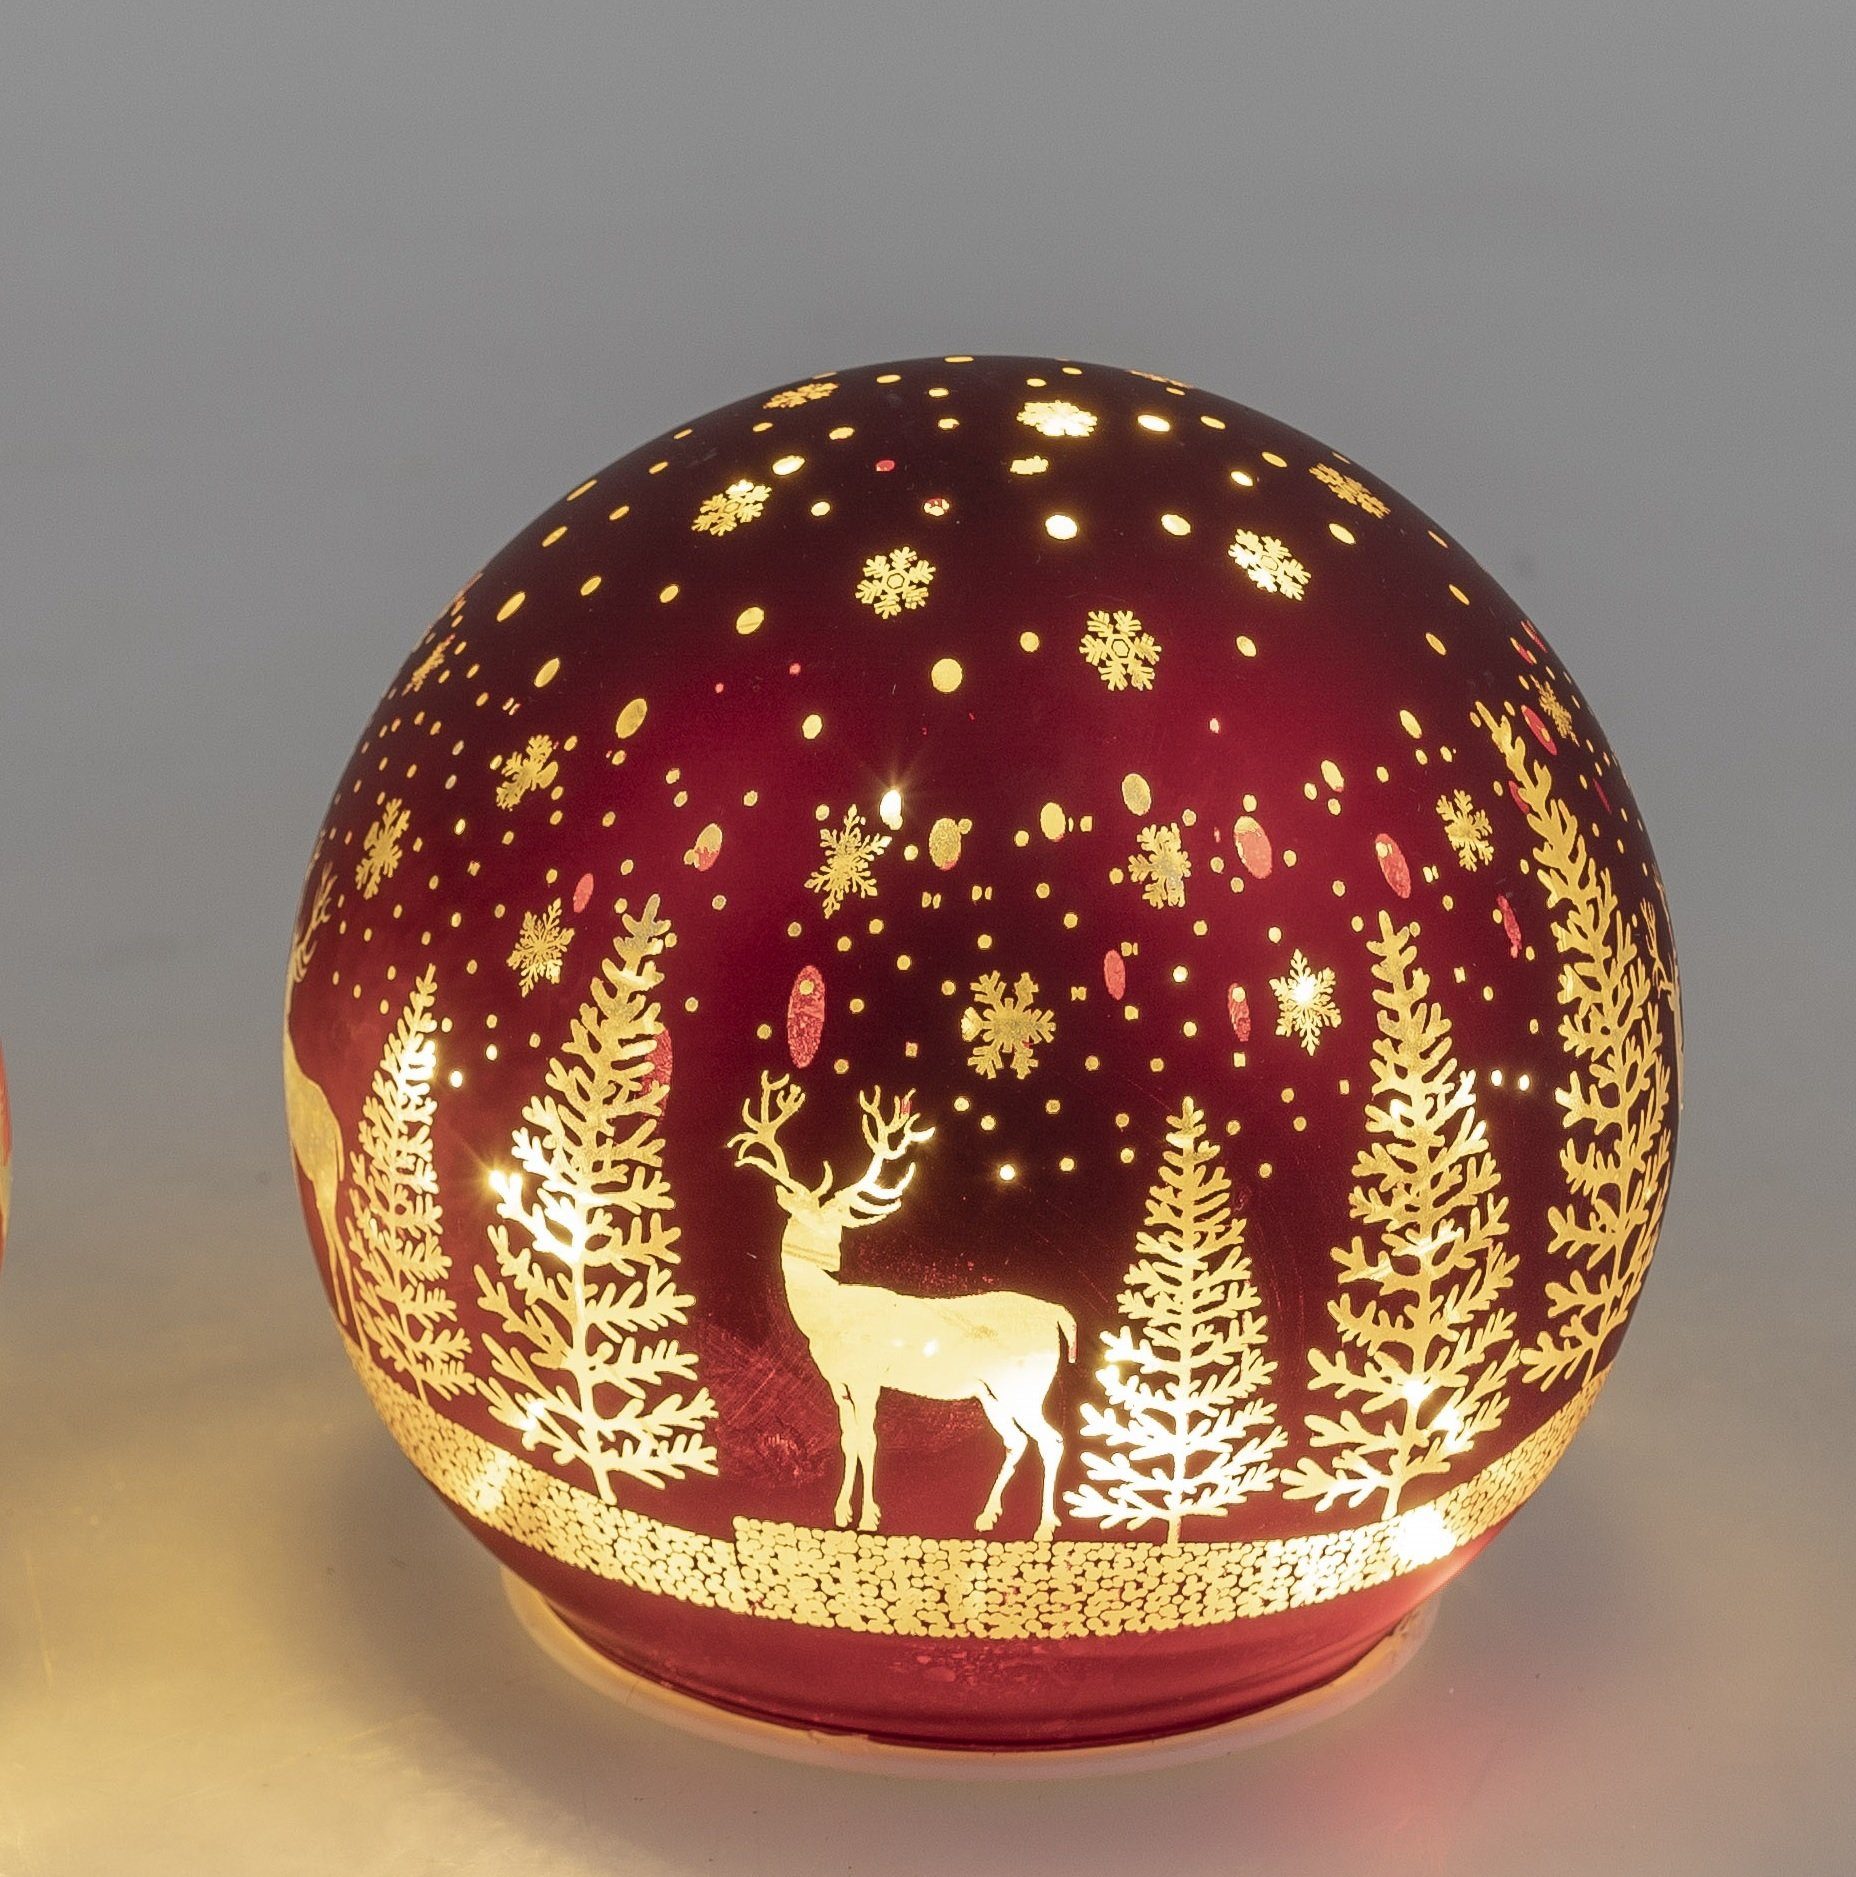 formano Weihnachtsbaumkugel Deko Kugel Licht rot mit Hirsch und Bäume LED-Licht mit Timer, 15 cm, Glas